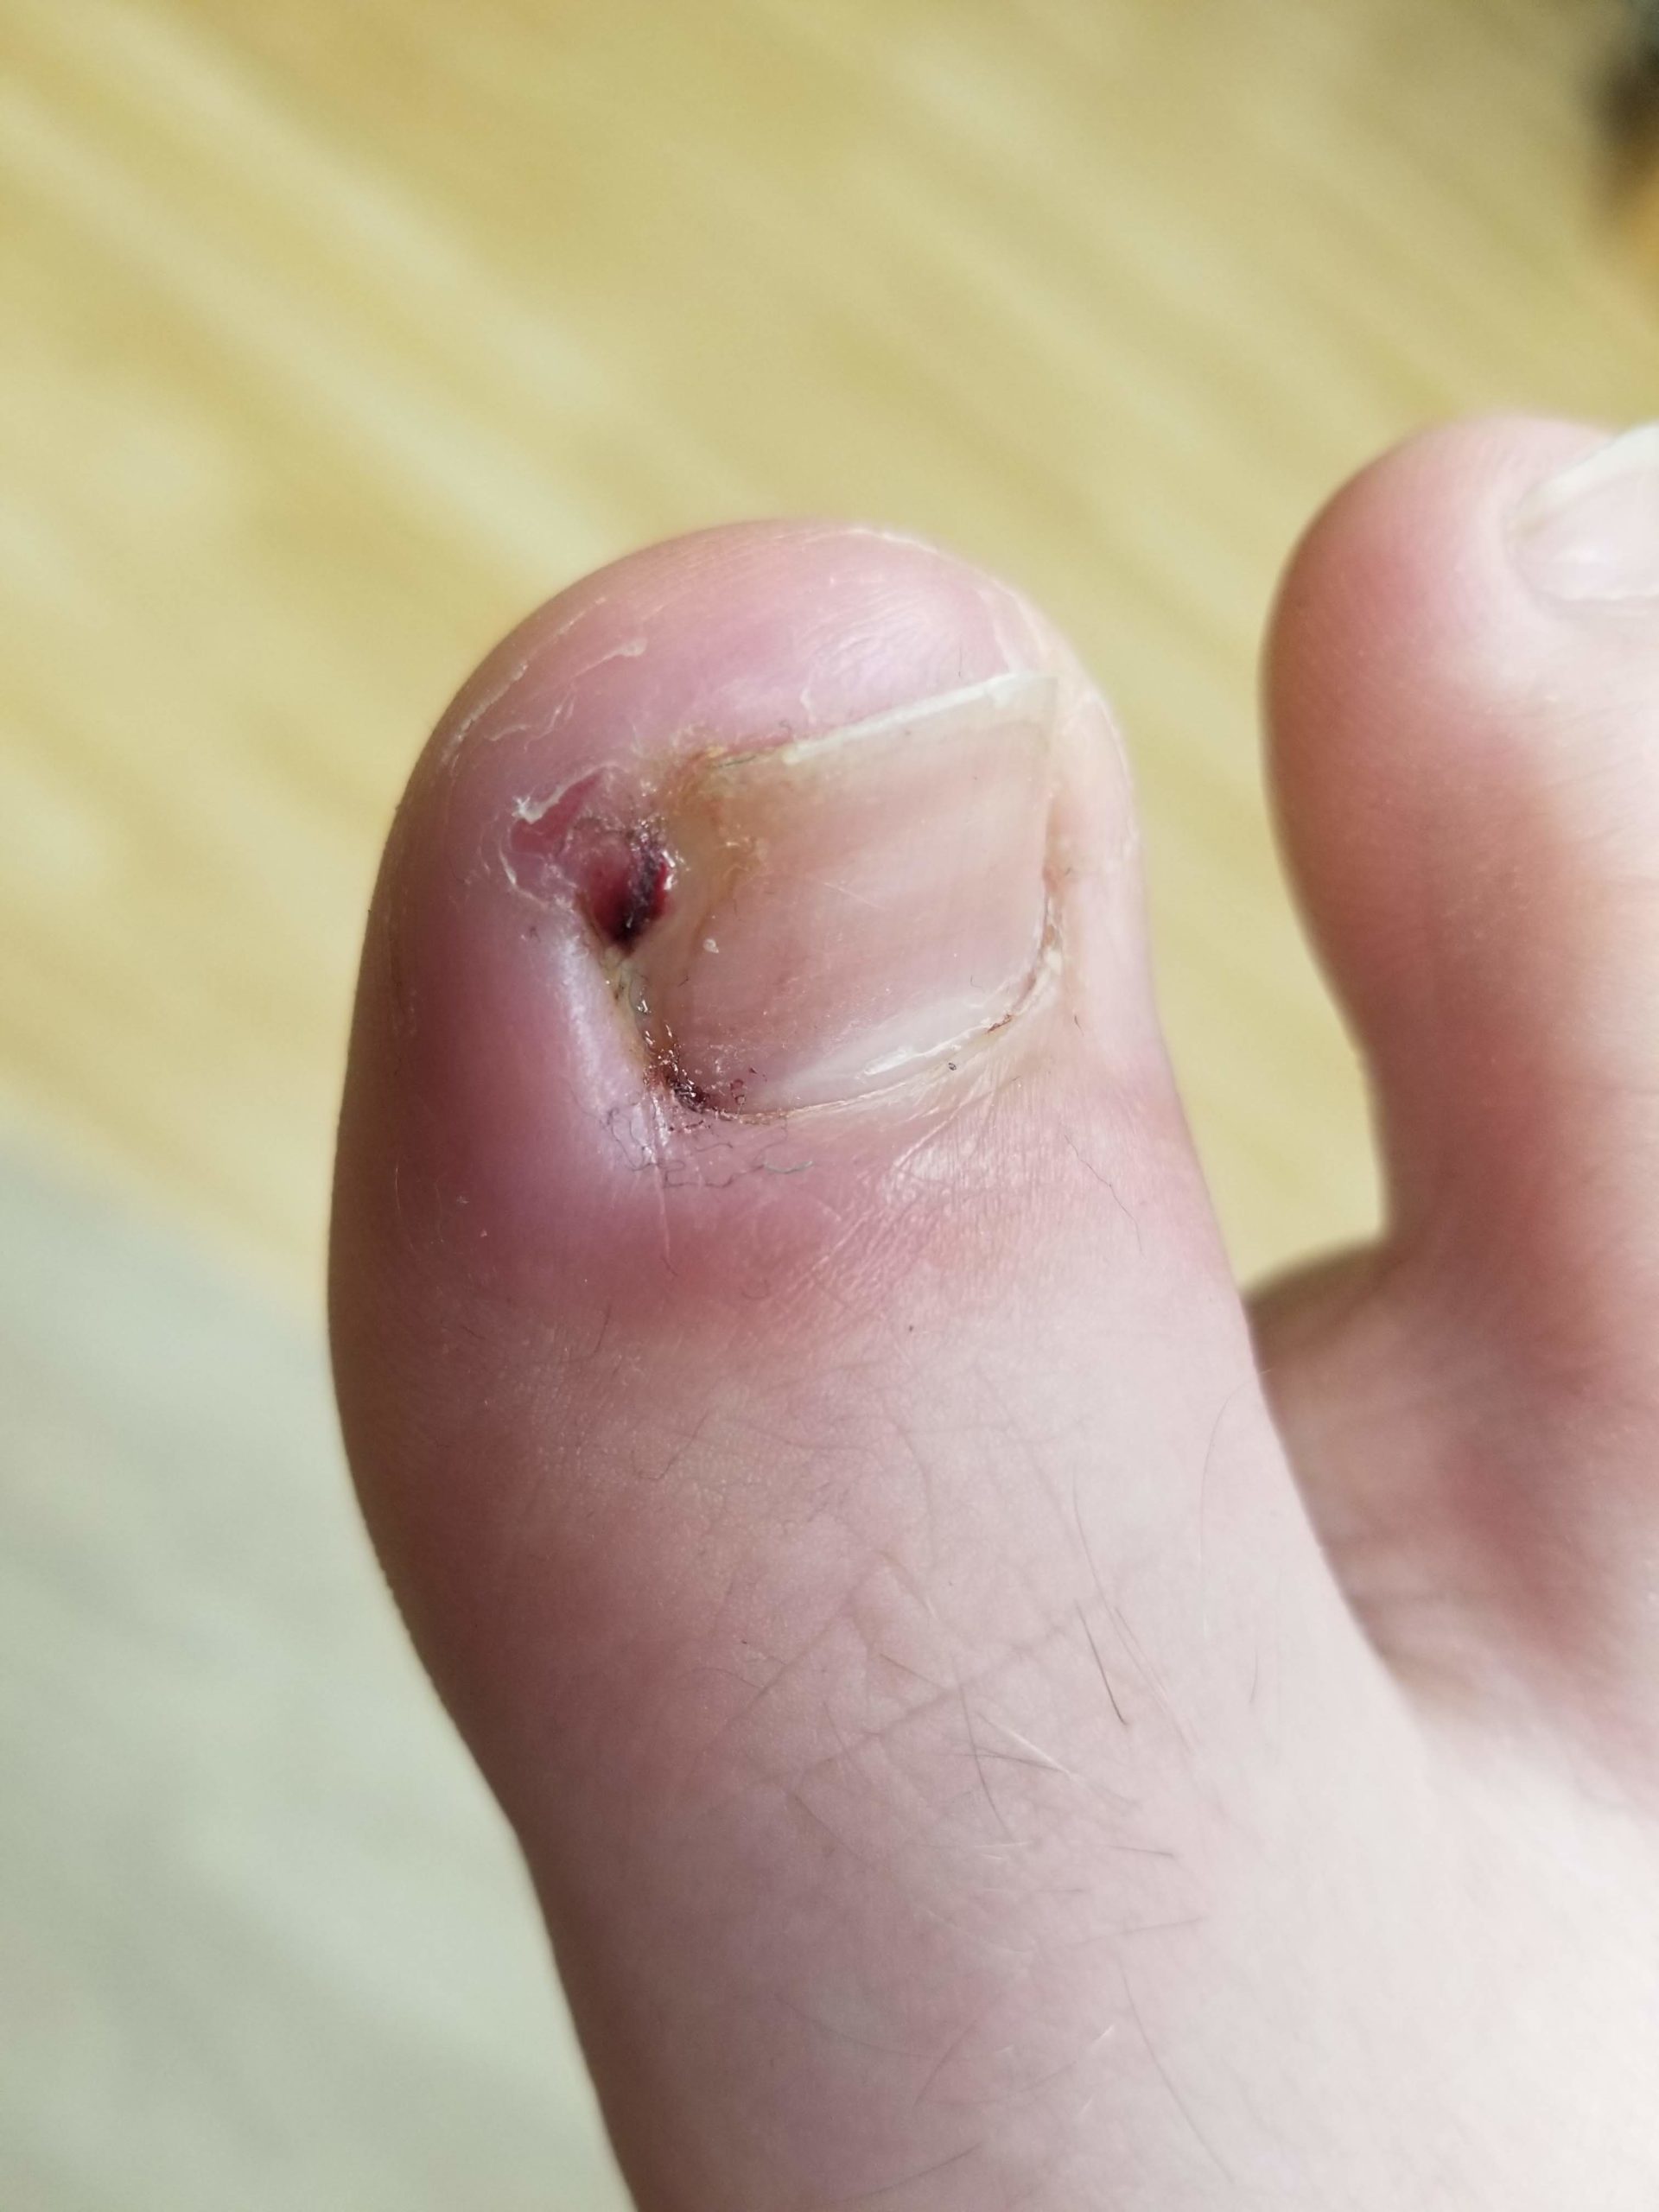 Ingrowing toenail